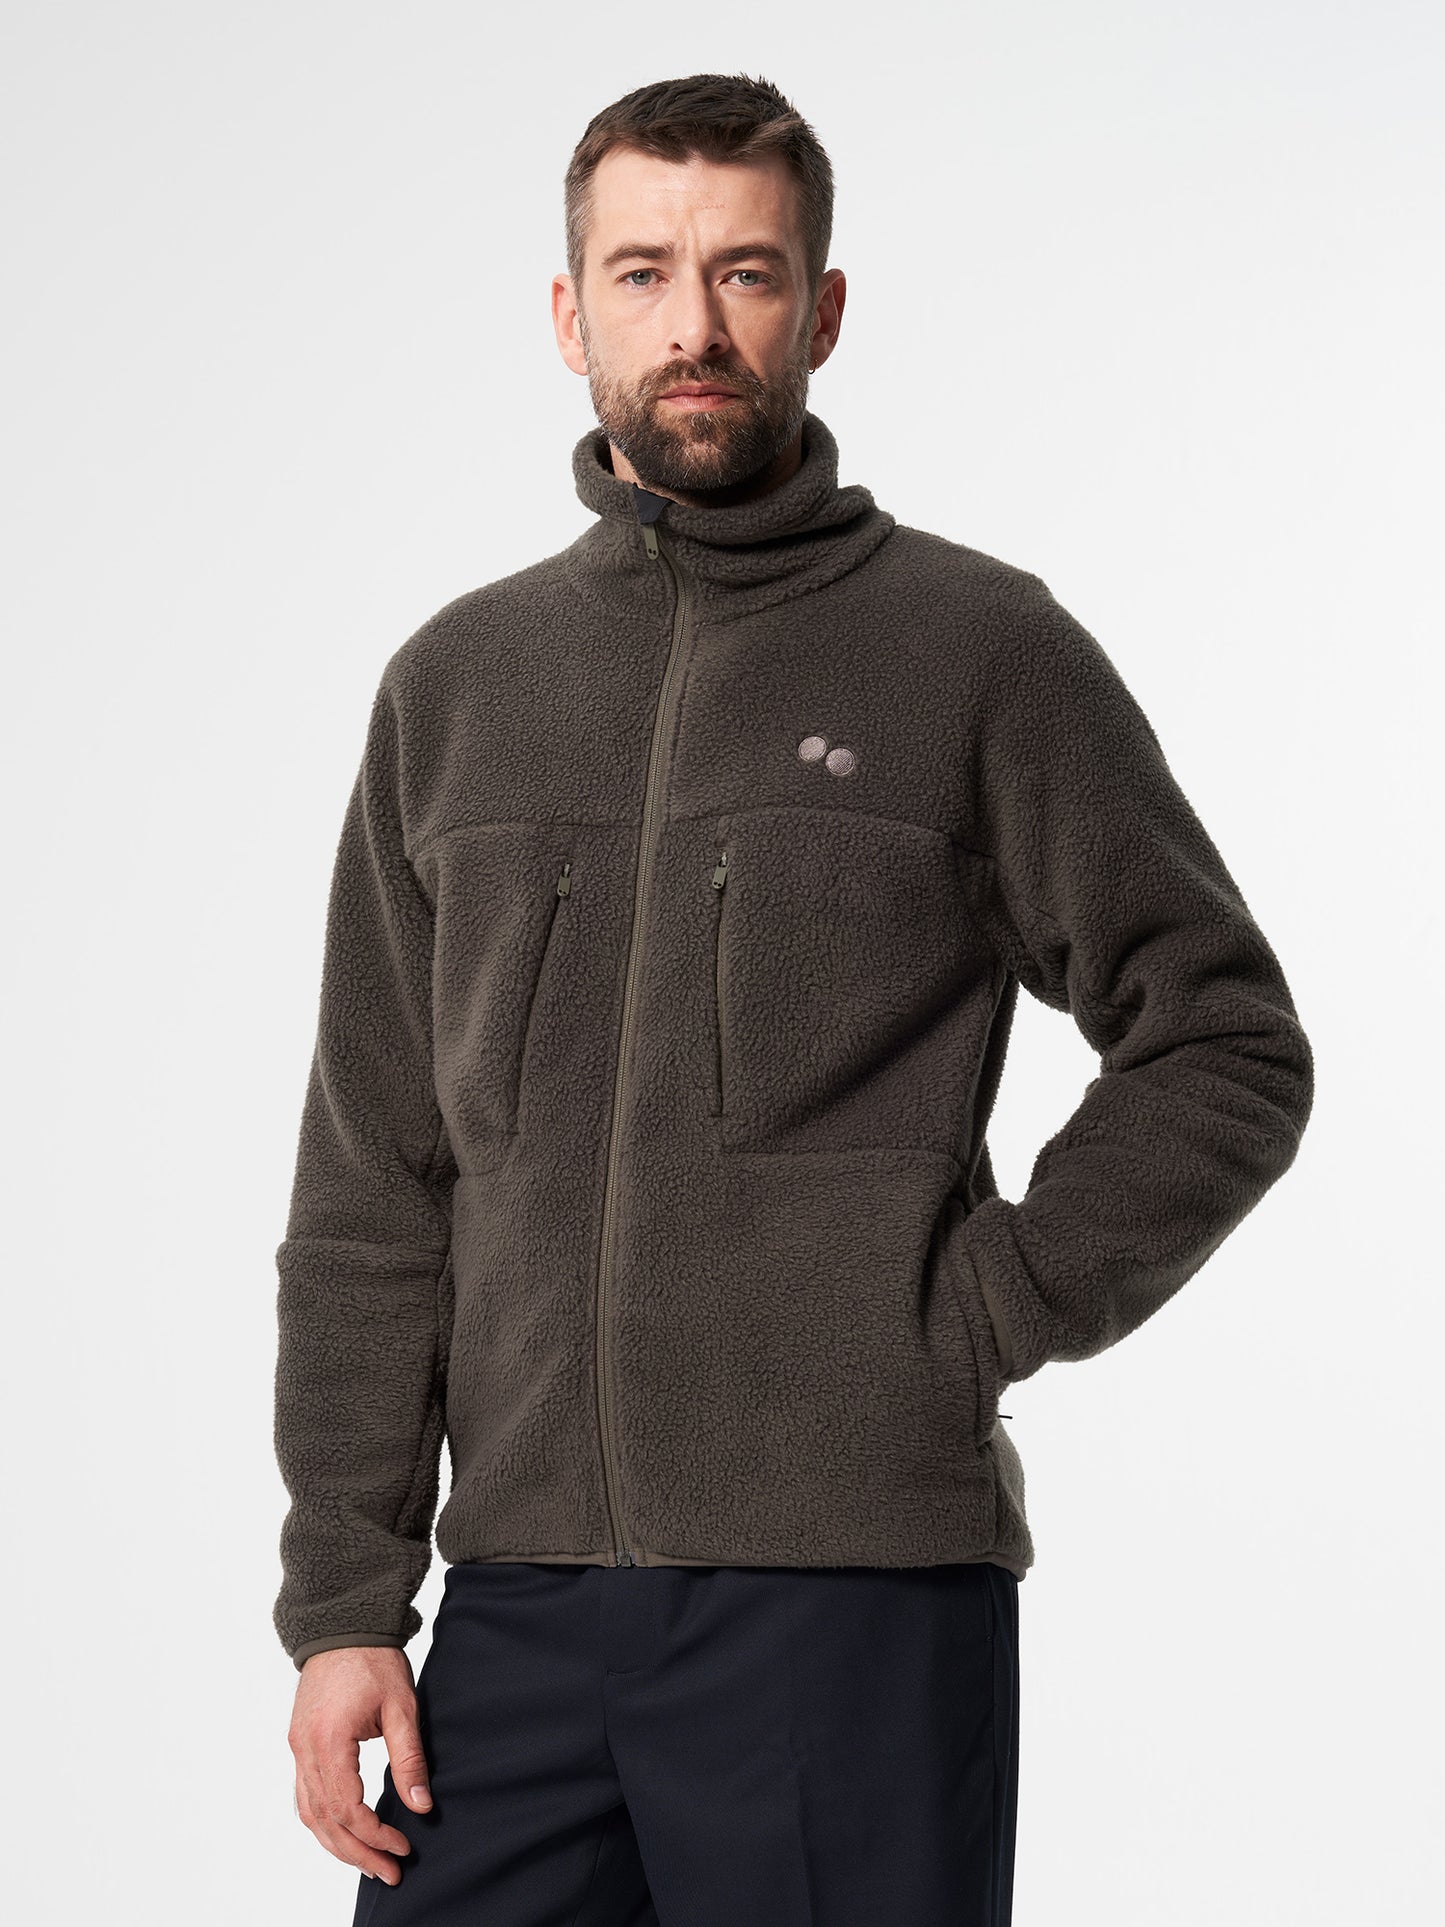 pinqponq-Fleece-Jacket-Men-Coffee-Brown-model-front